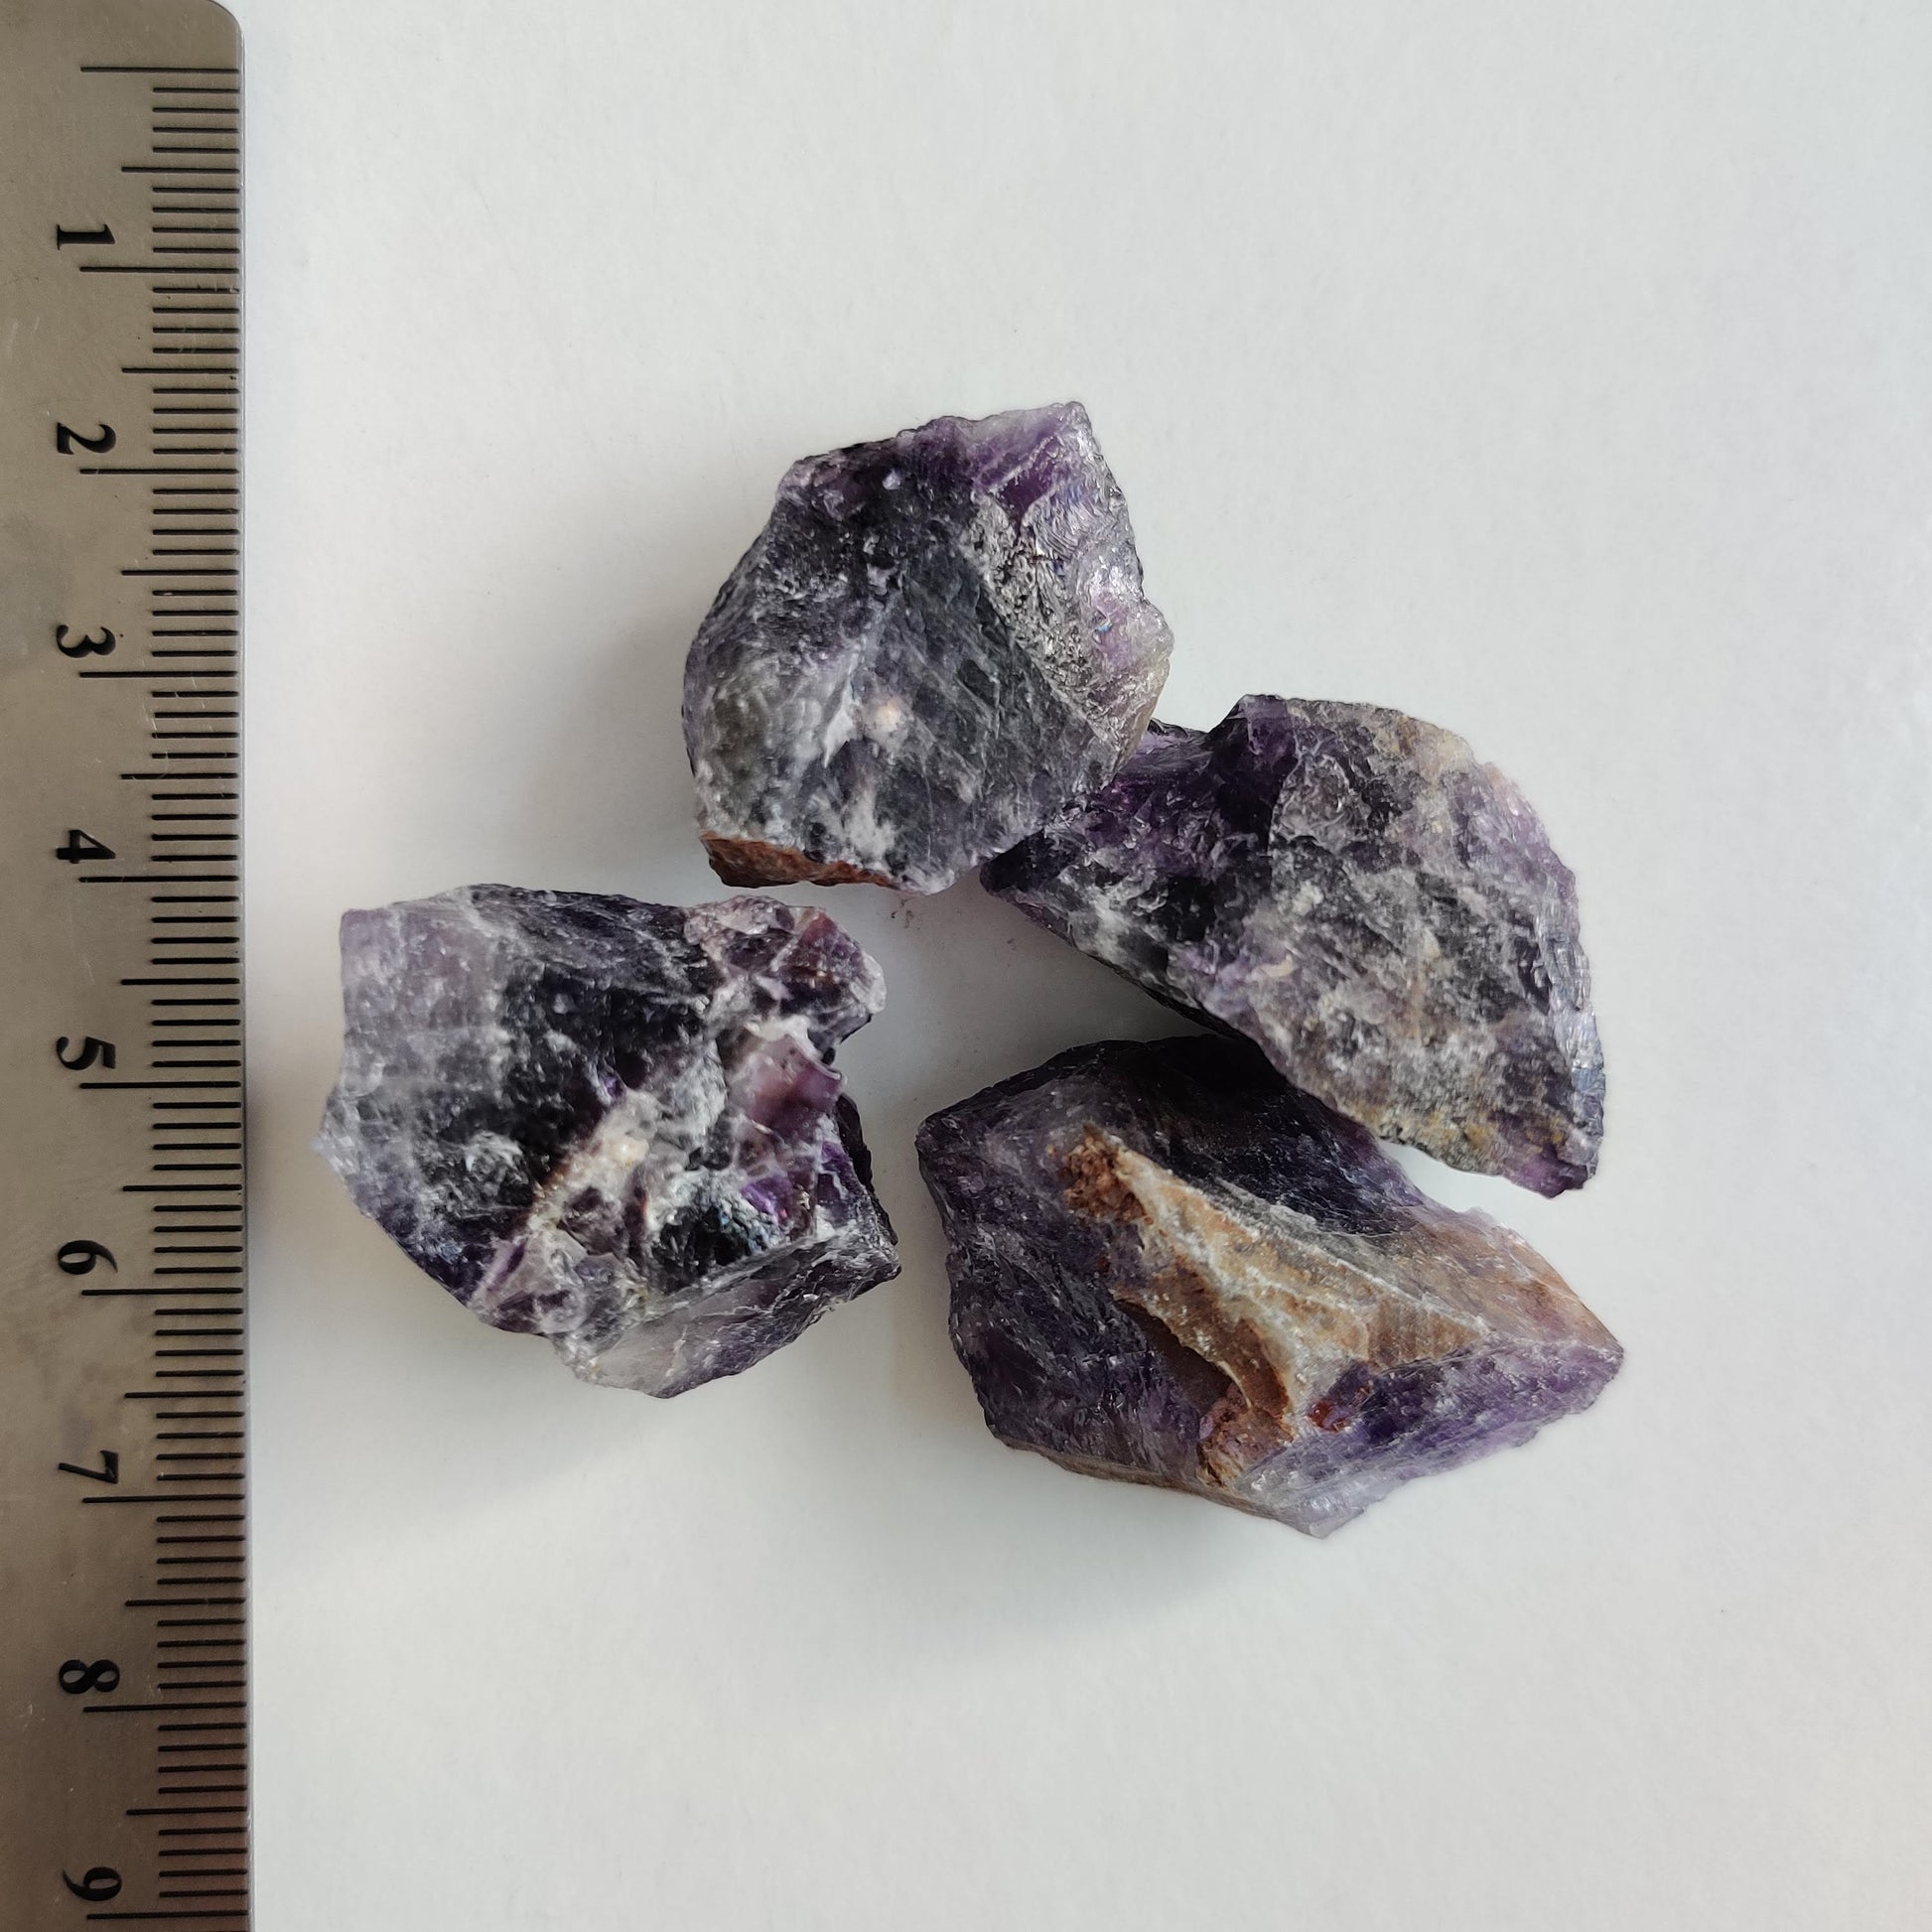 Dark Amethyst Rough Tumbled Crystal (1-2cm) - Rivendell Shop